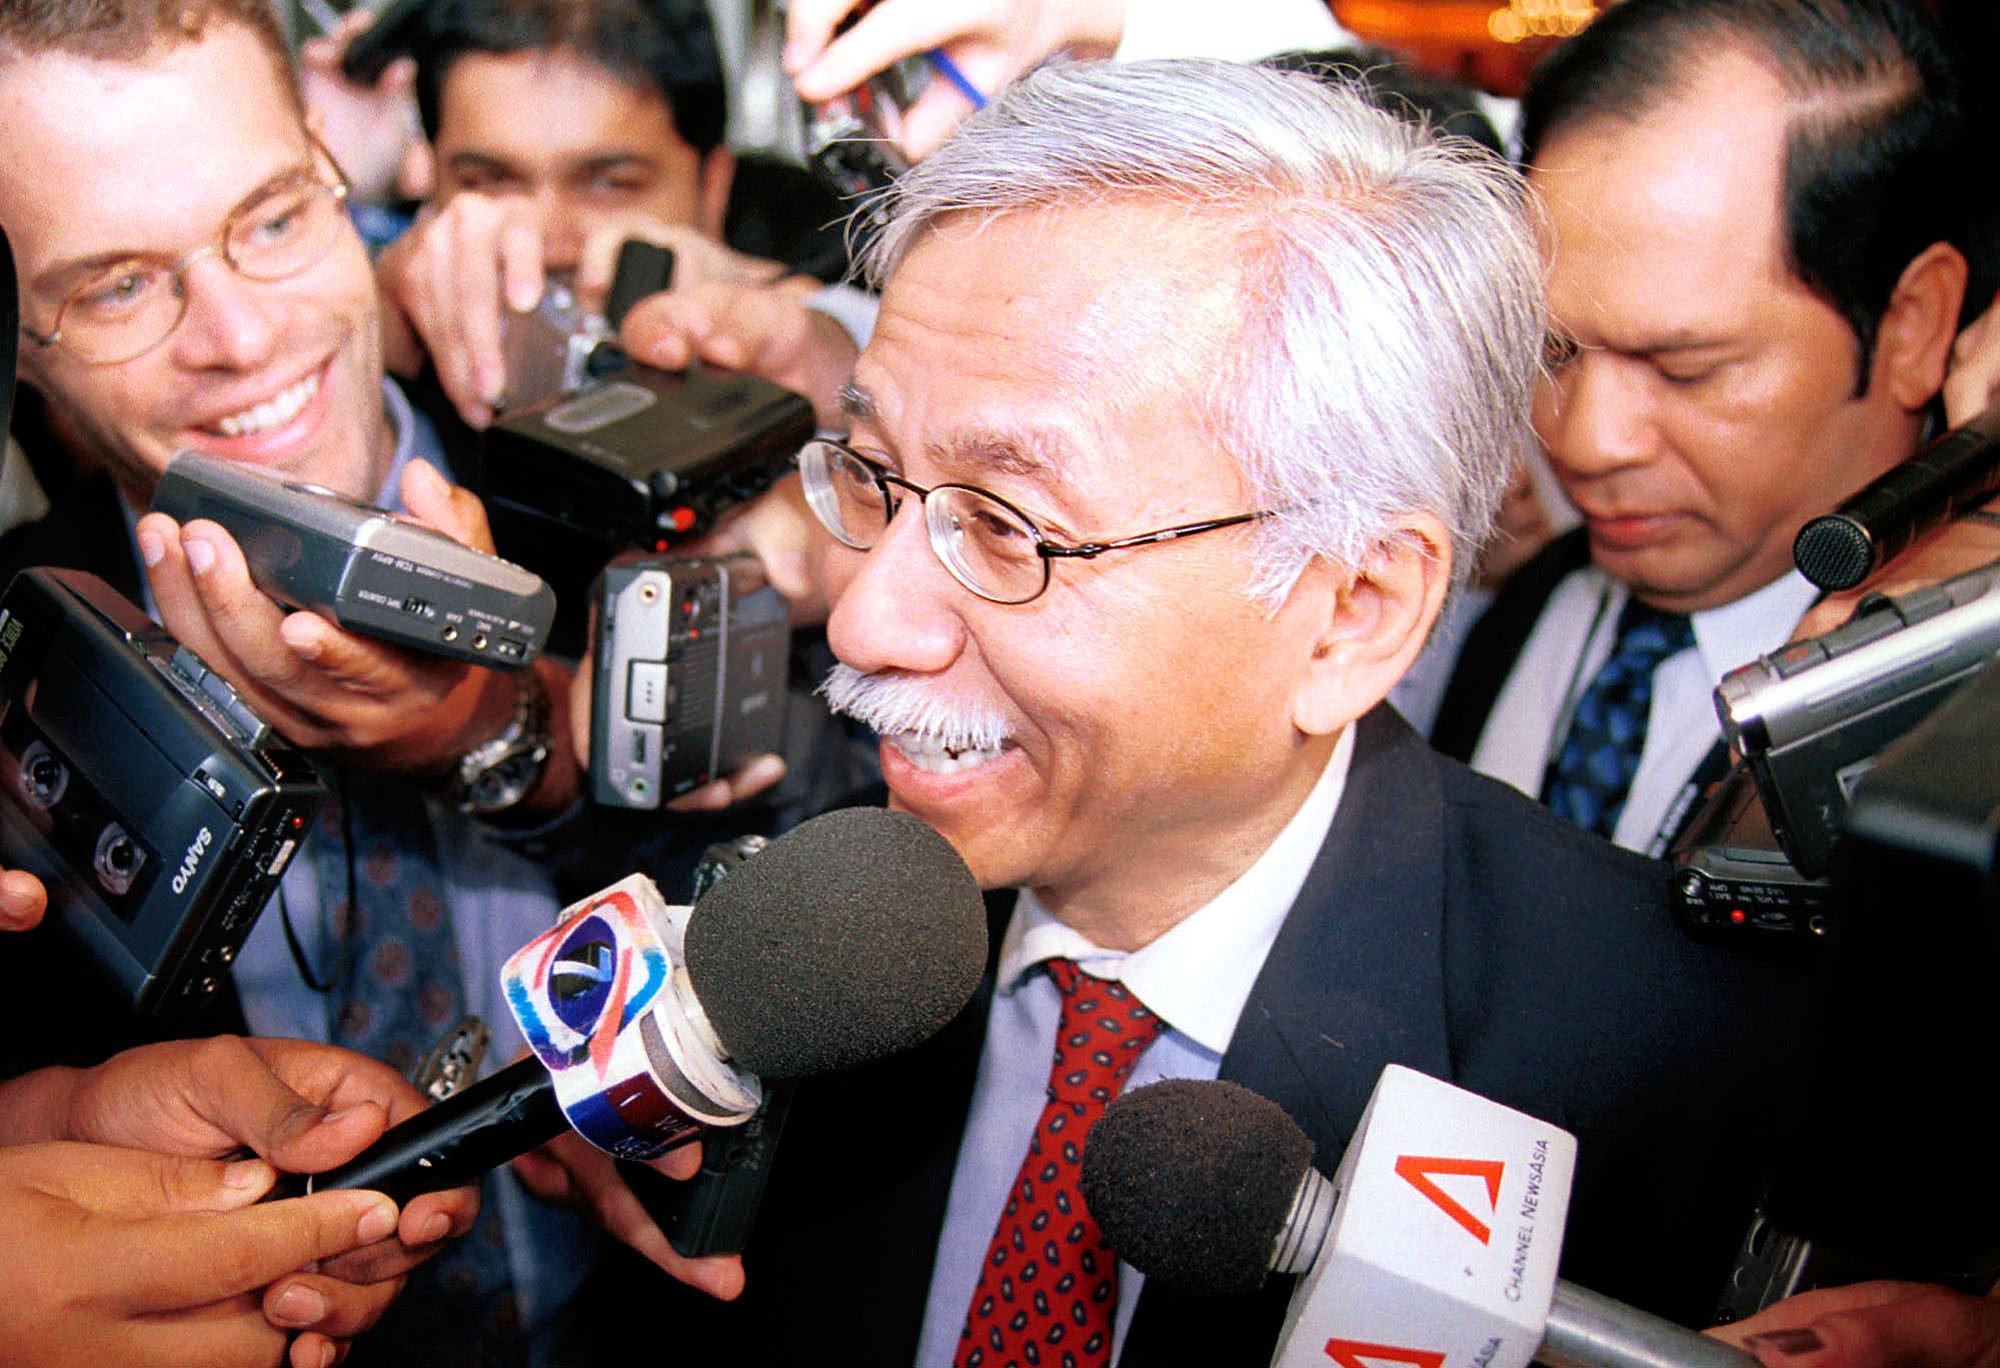 Malaysia’s then finance minister Daim Zainuddin at a conference in Kuala Lumpur in 2001. Photo: AP